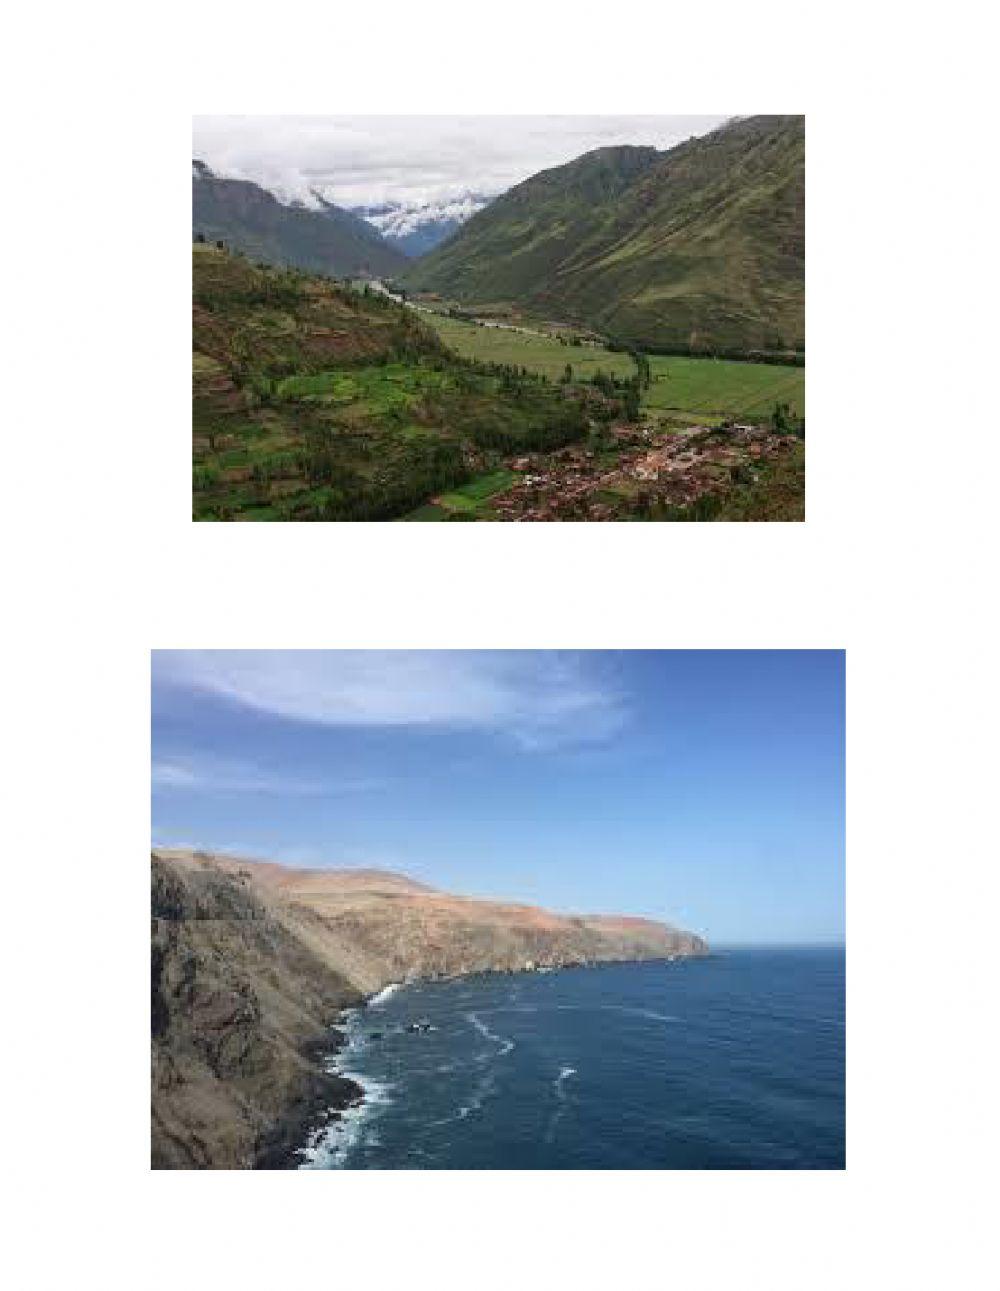 Eight natural regions of Peru